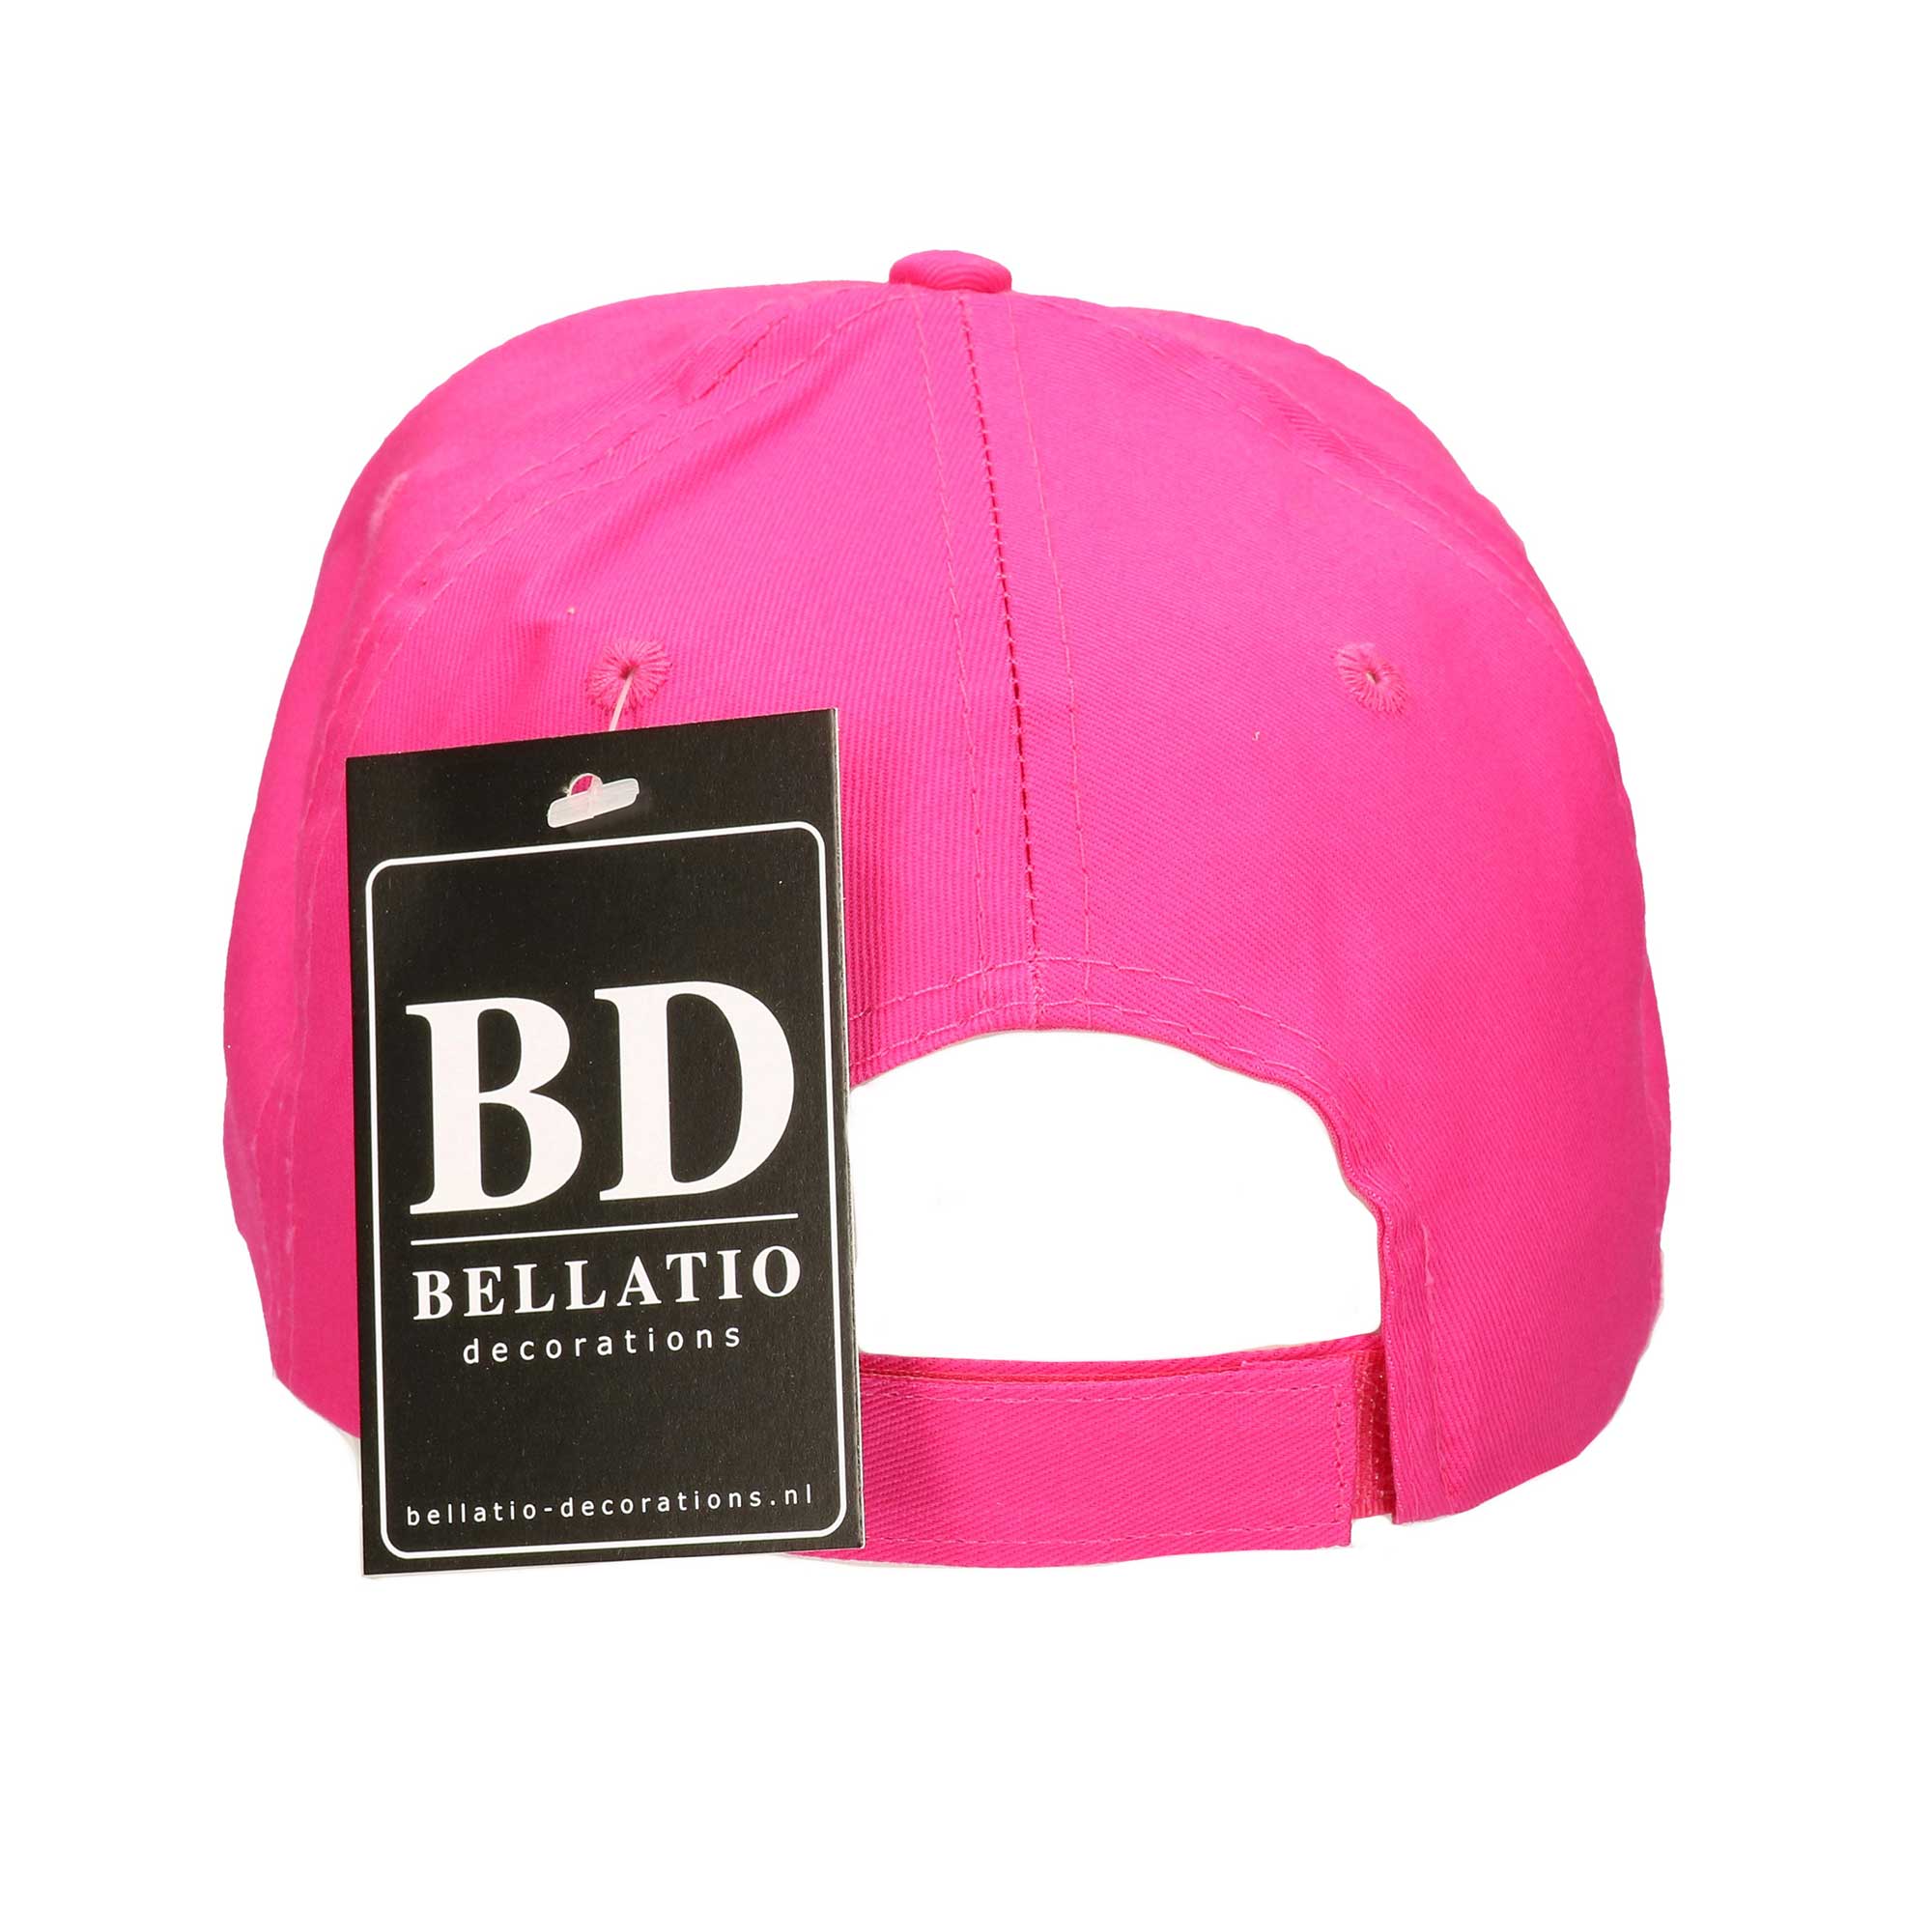 Letter M pet / cap roze voor volwassenen - verkleed / carnaval baseball cap